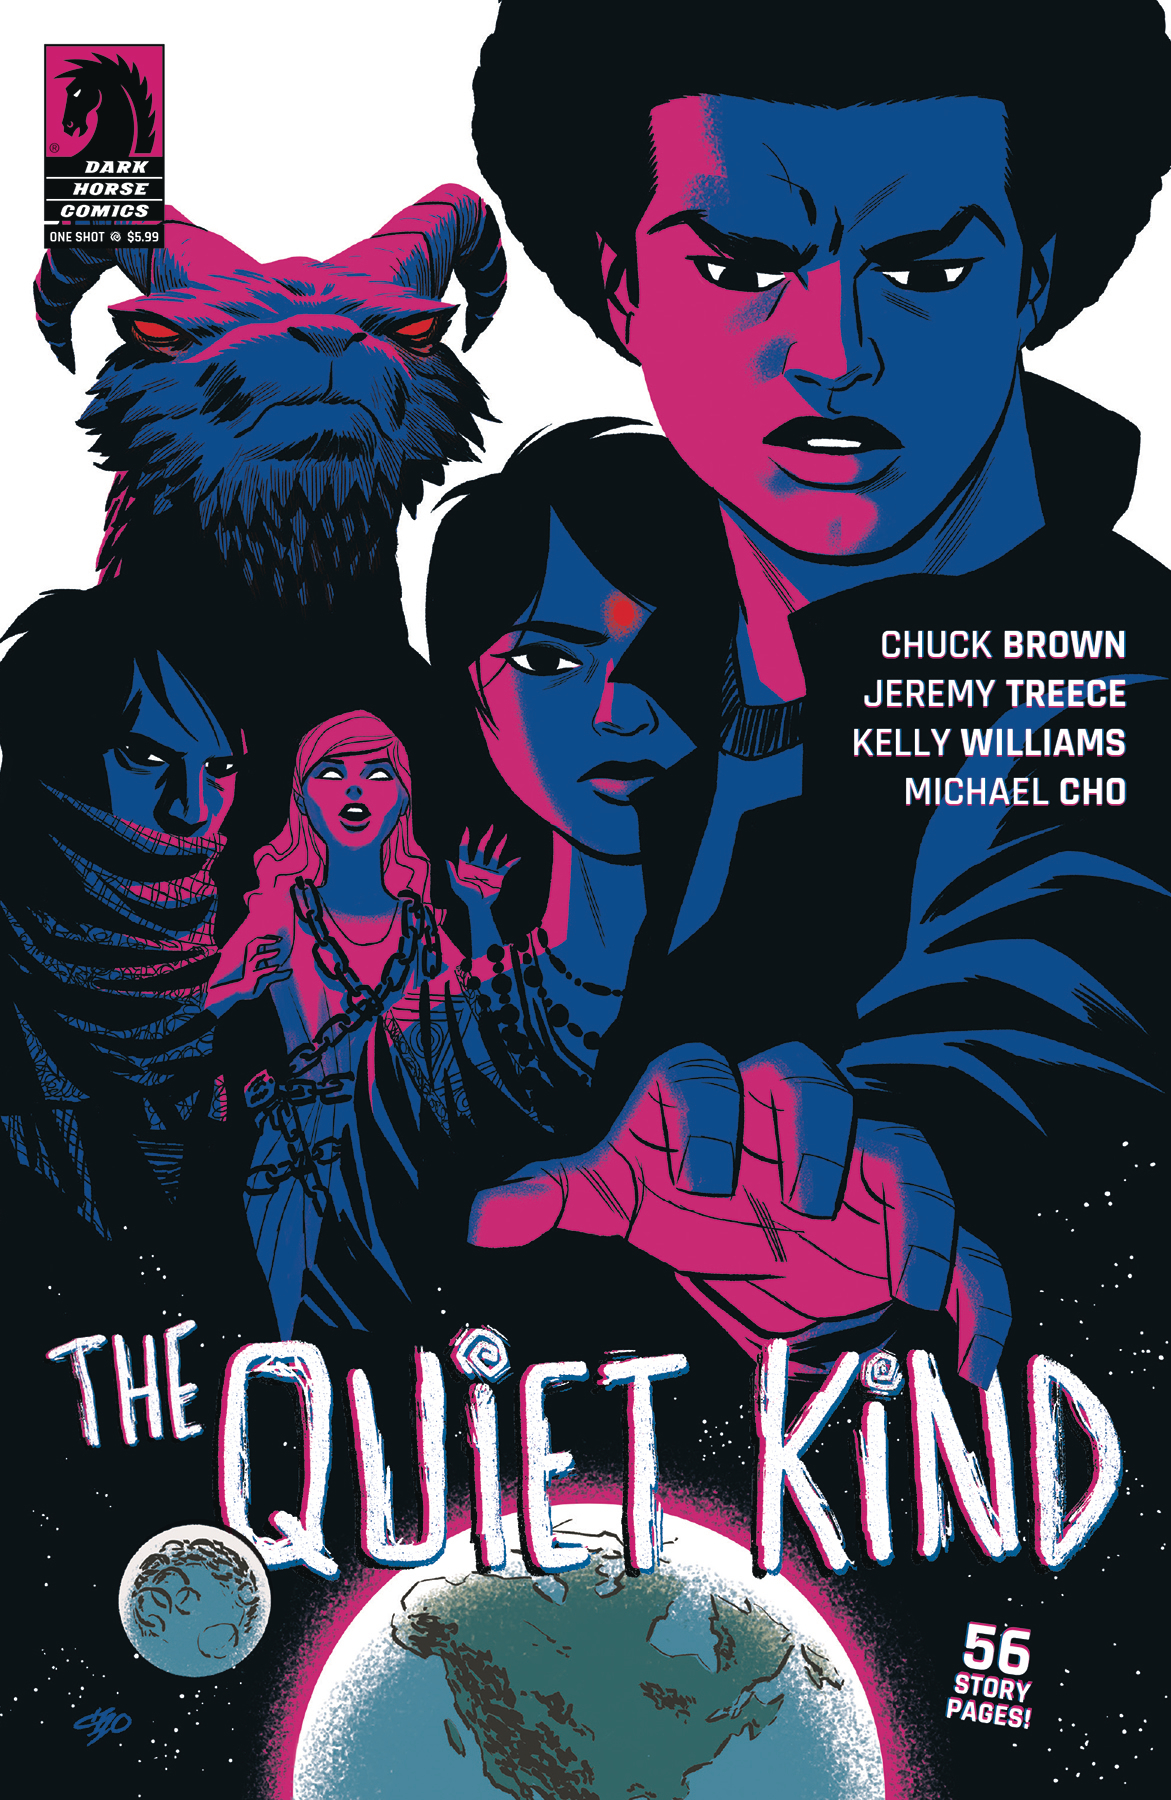 Quiet Kind no. 1 (One Shot) (2019)